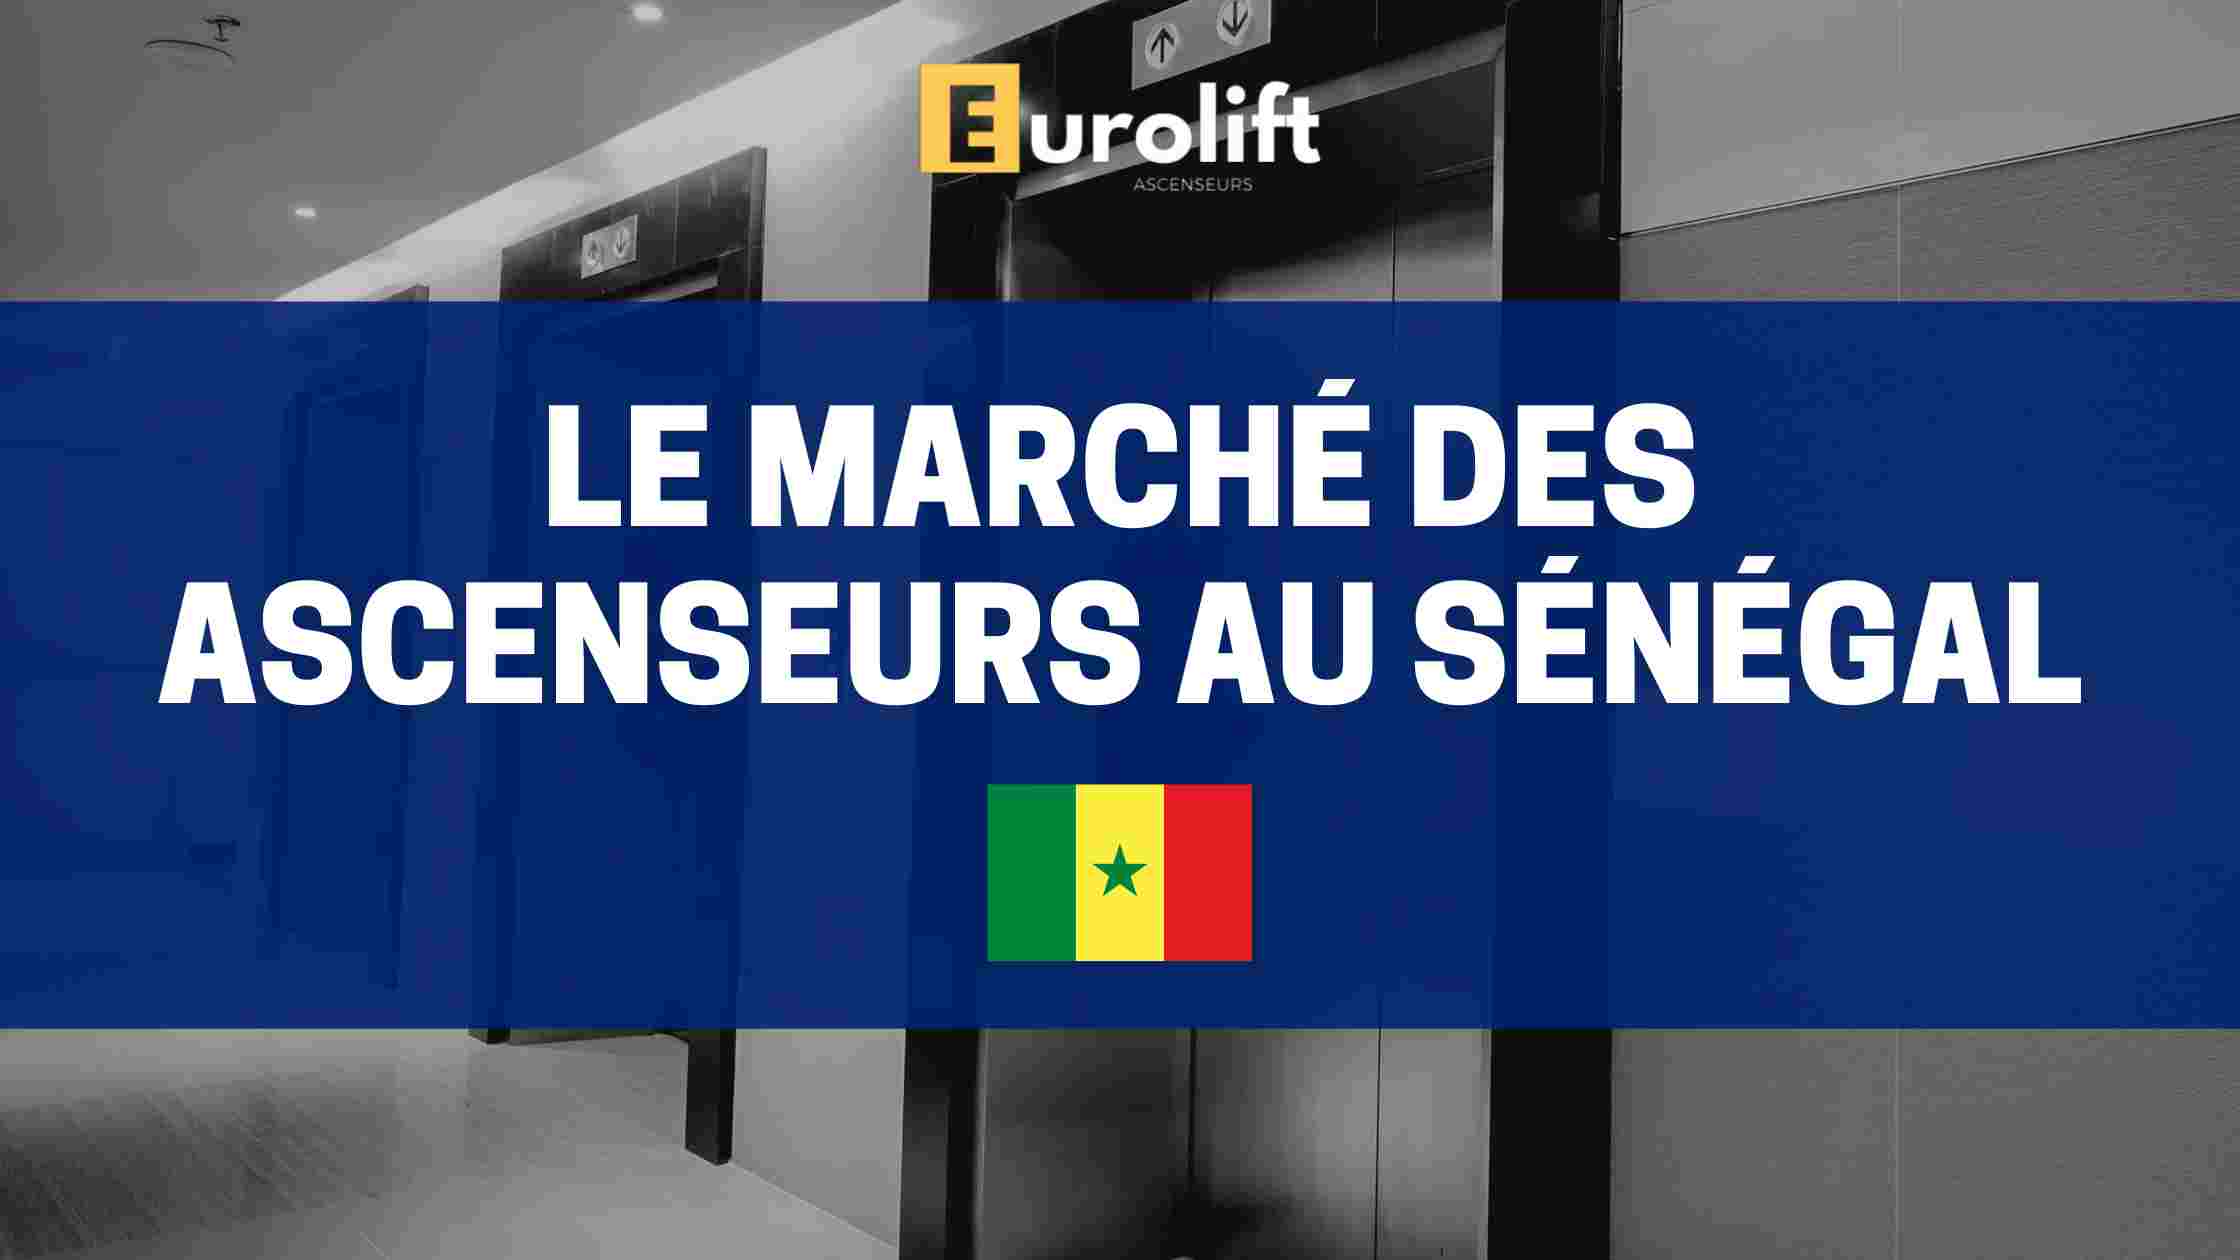 marché de l'importation des ascenseurs en algerie